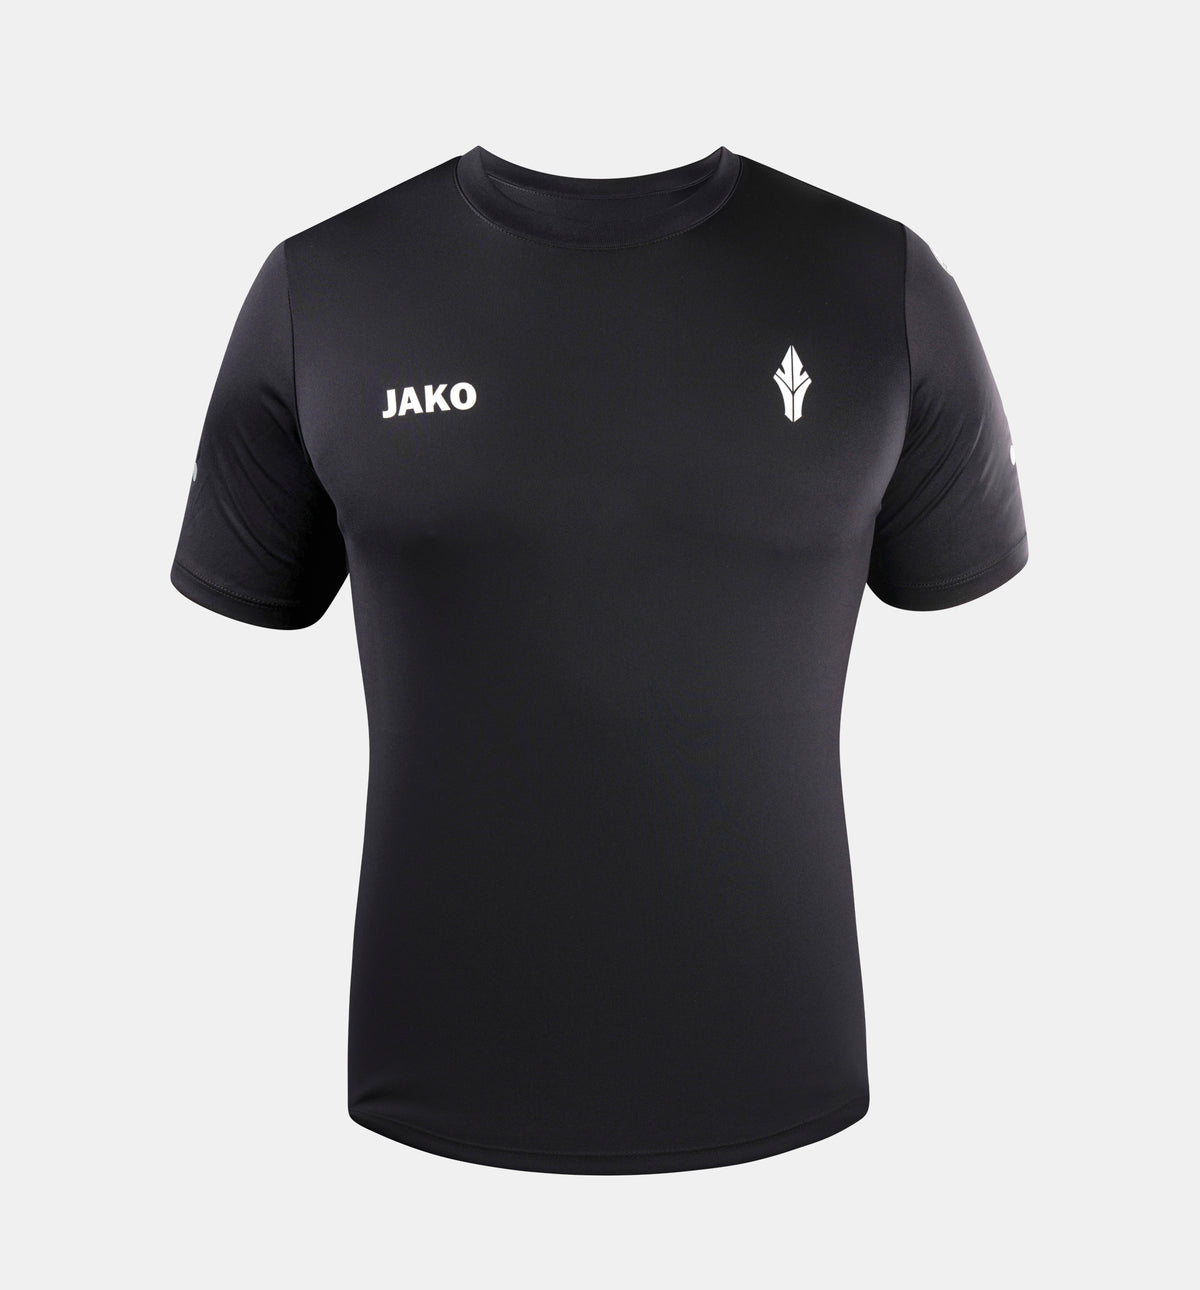 HAVU x JAKO Sports T-Shirt